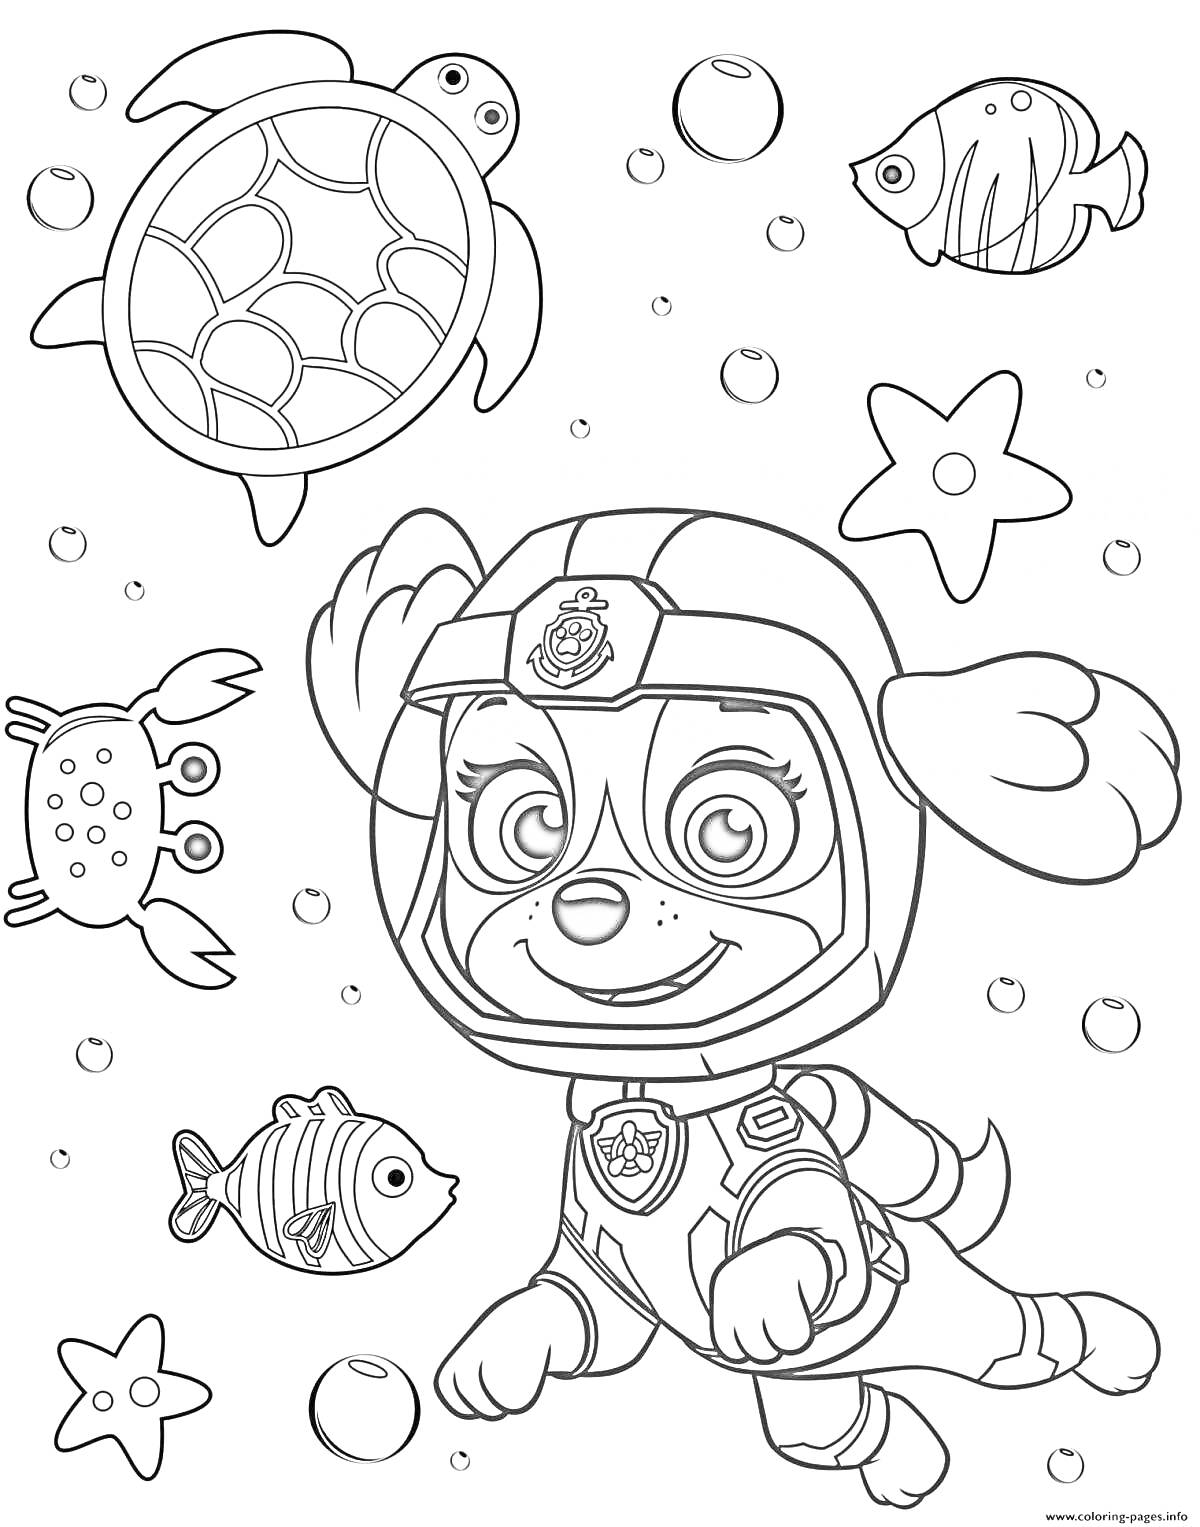 Раскраска Щенячий патруль, щенок скафандр, подводные пузырьки, черепаха, краб, морские звезды и рыбки